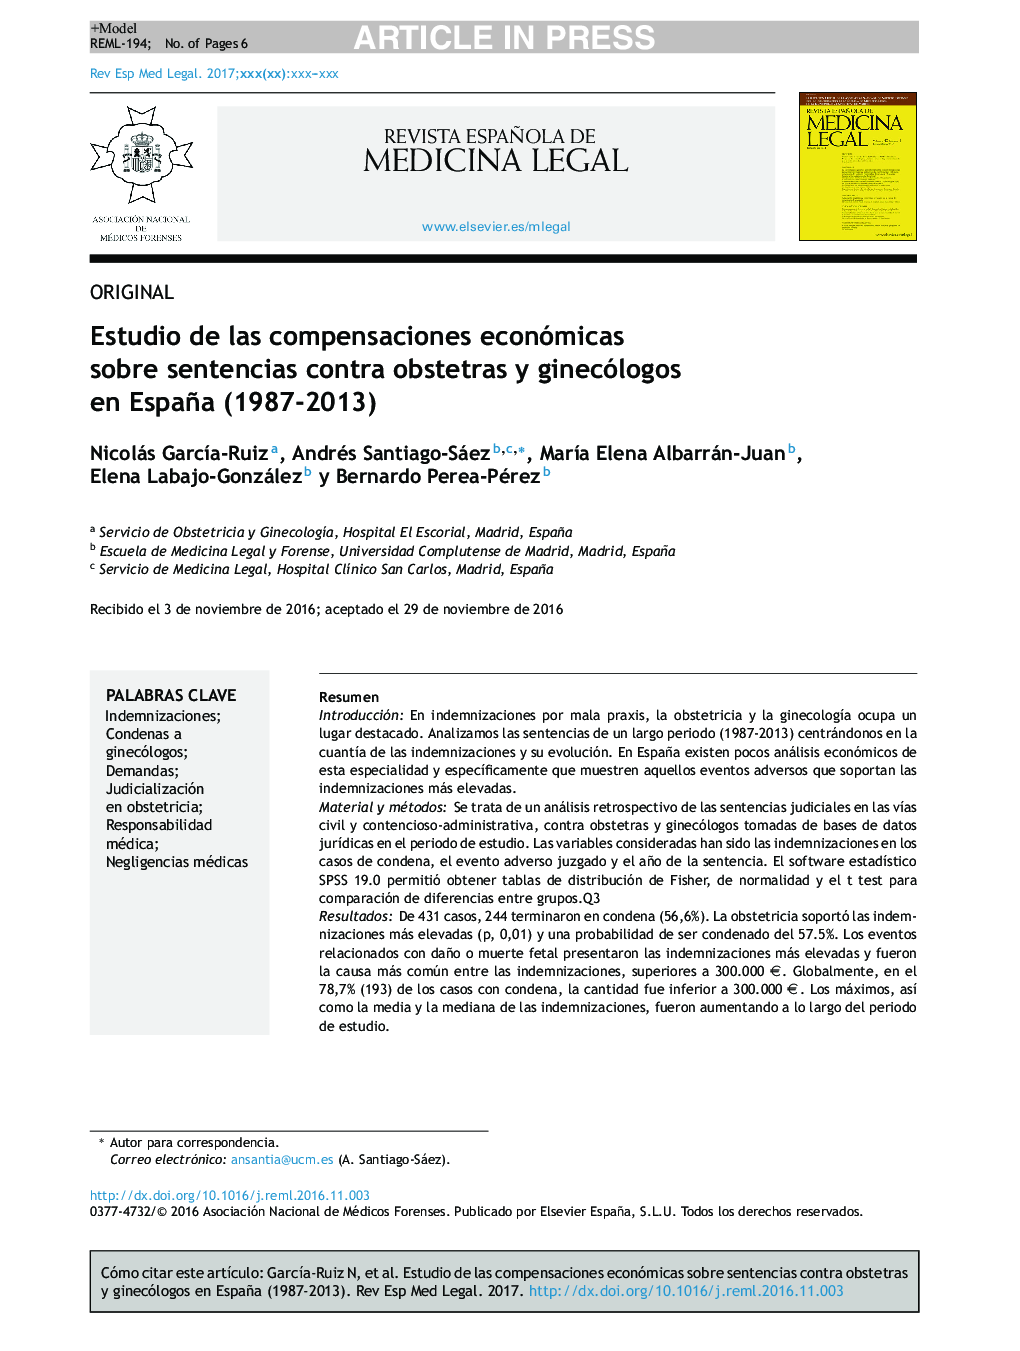 Estudio de las compensaciones económicas sobre sentencias contra obstetras y ginecólogos en España (1987-2013)